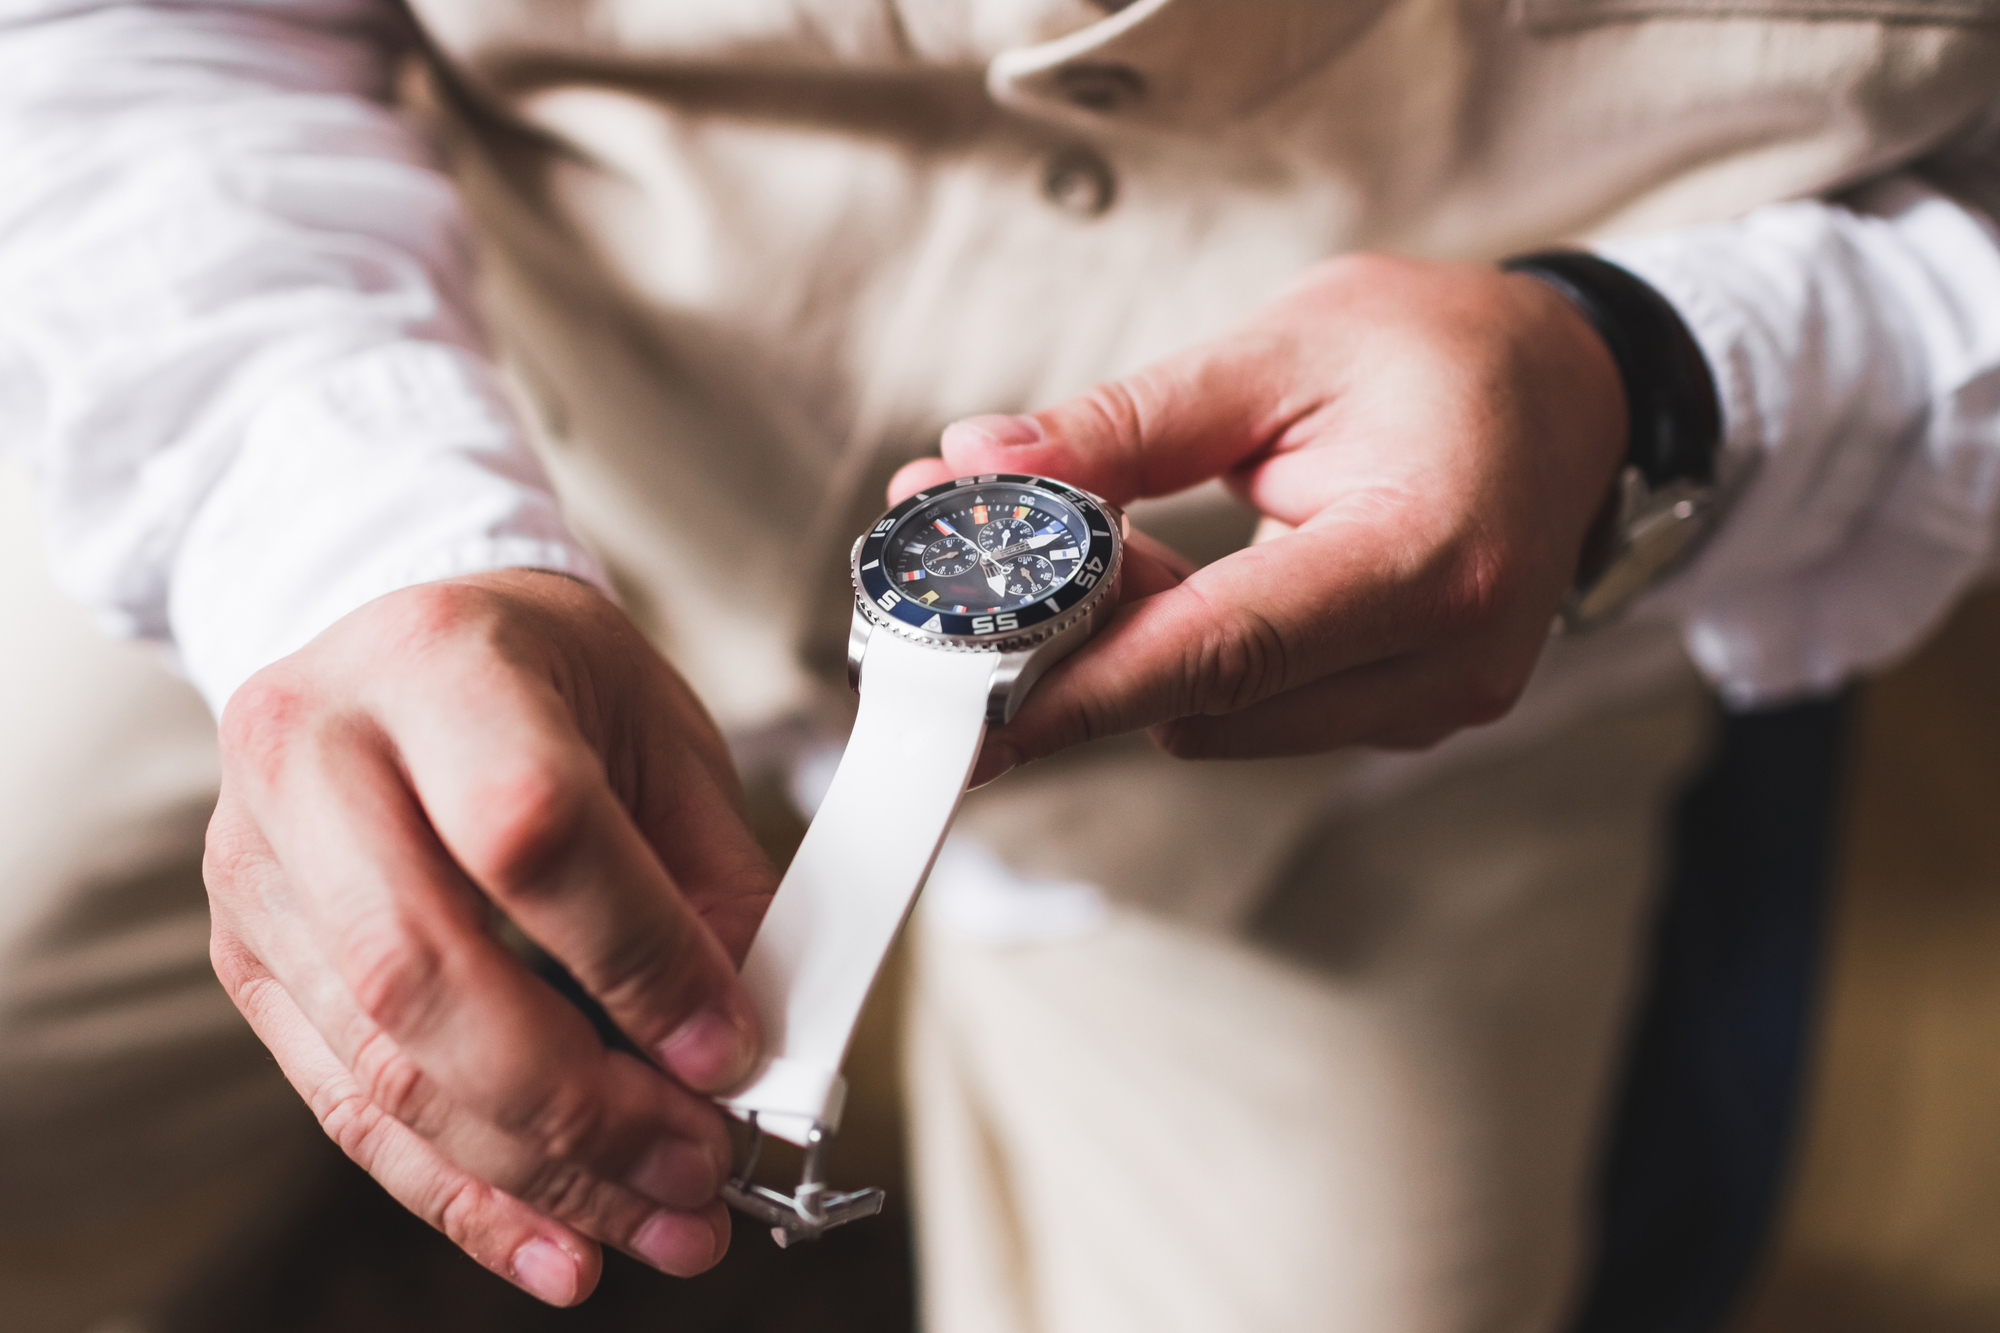 Holde botanist Accord Henrik Ørsnes sælger ure og smykker både på nettet og i deres butikker -  Businessguide